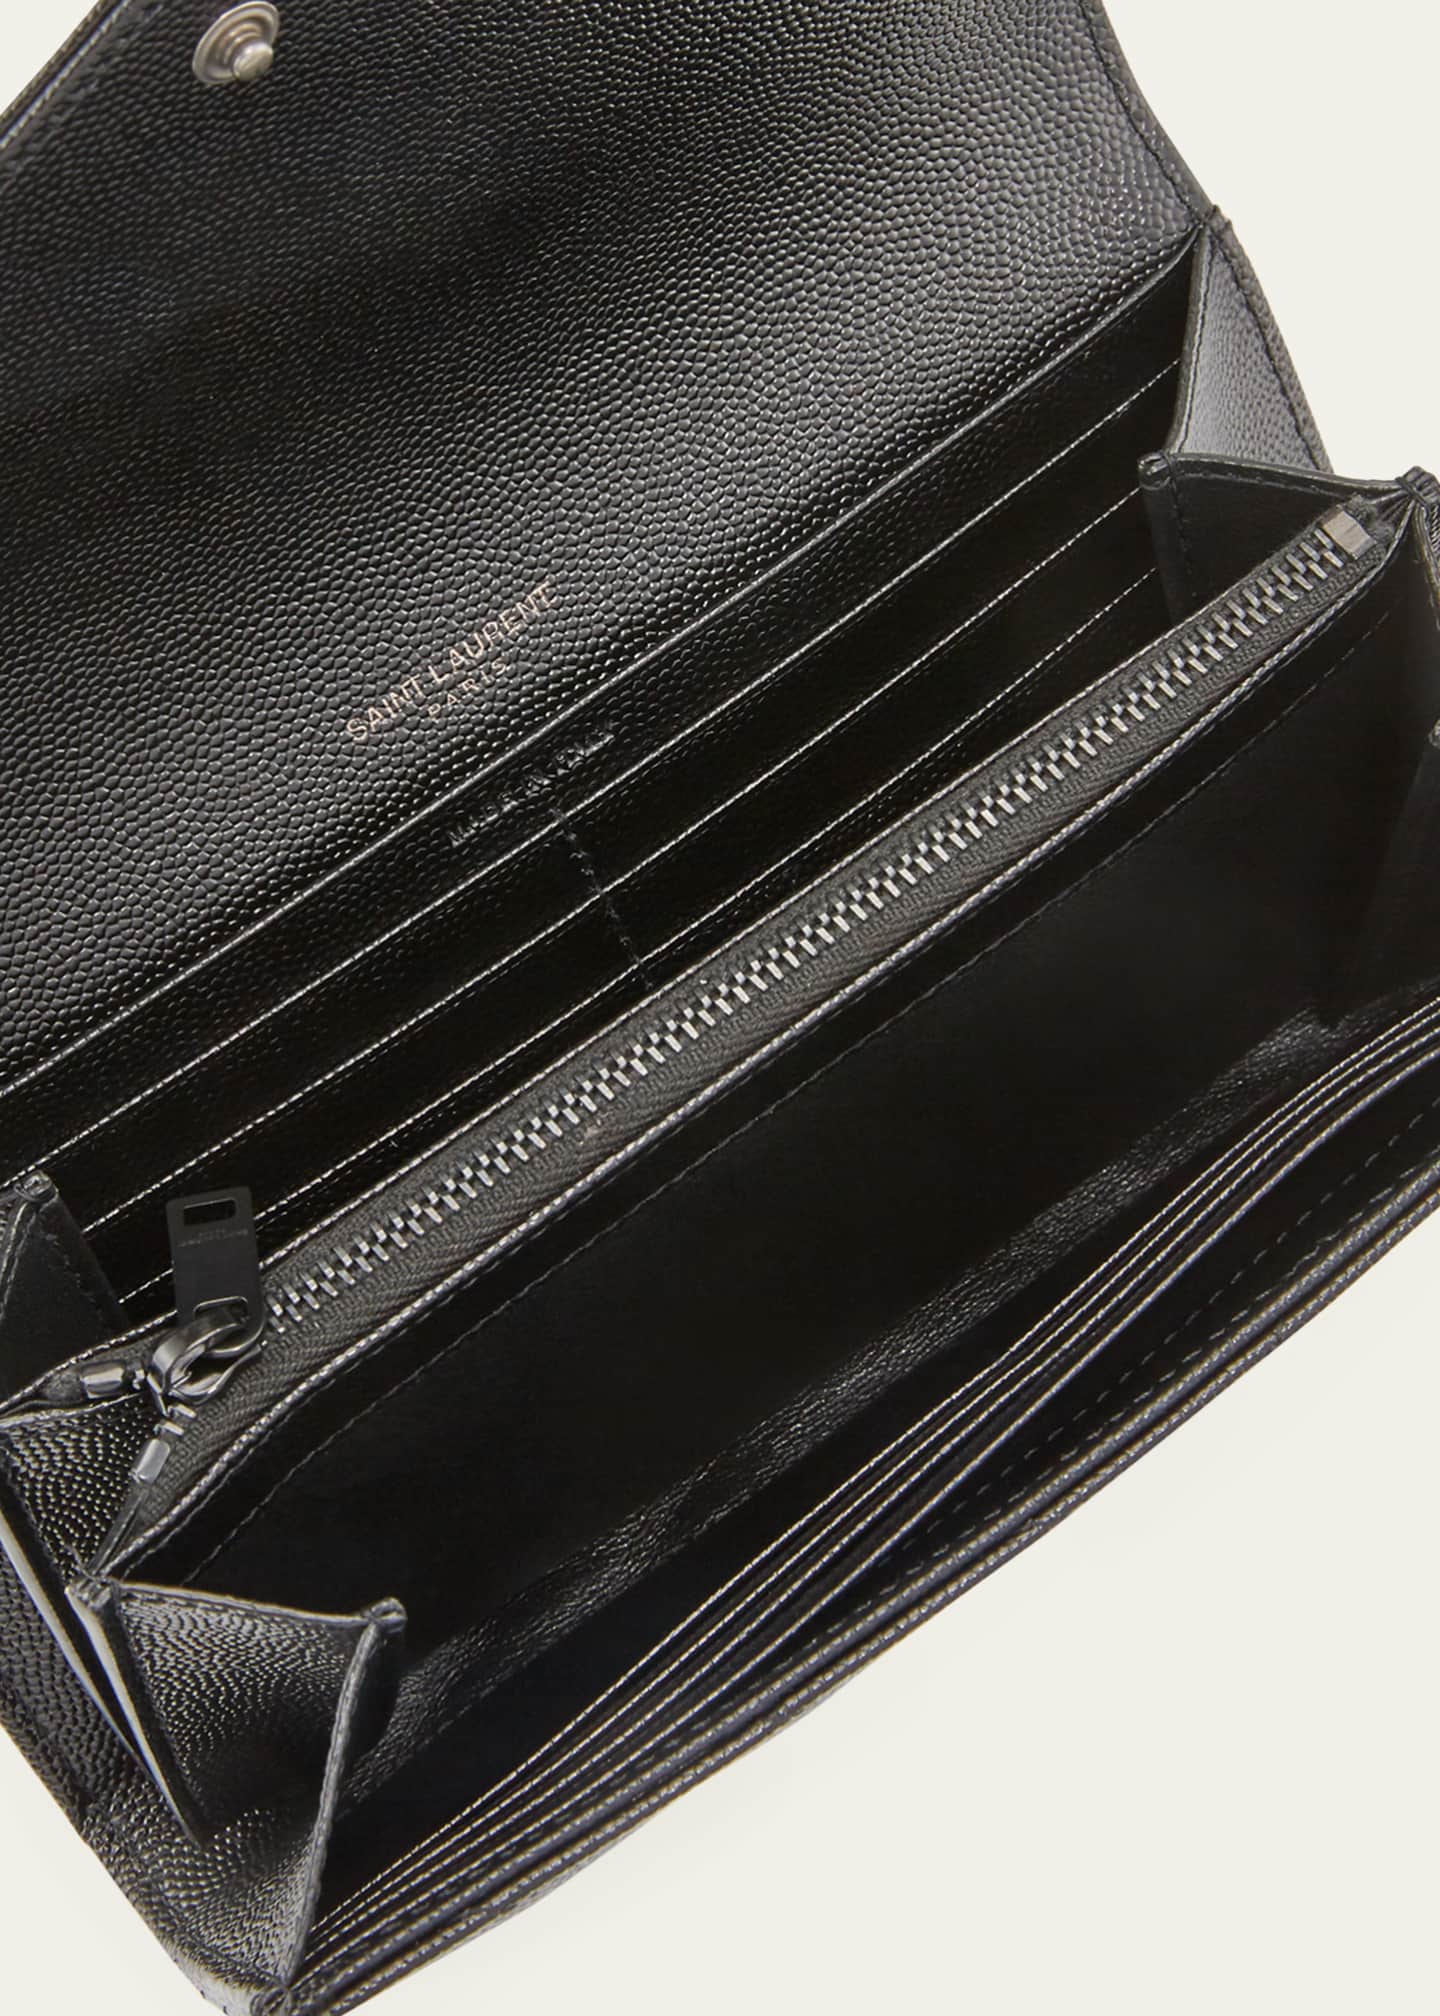 Saint Laurent - Large Monogram Flap Wallet - Women - Leather/Leather - One Size - Black